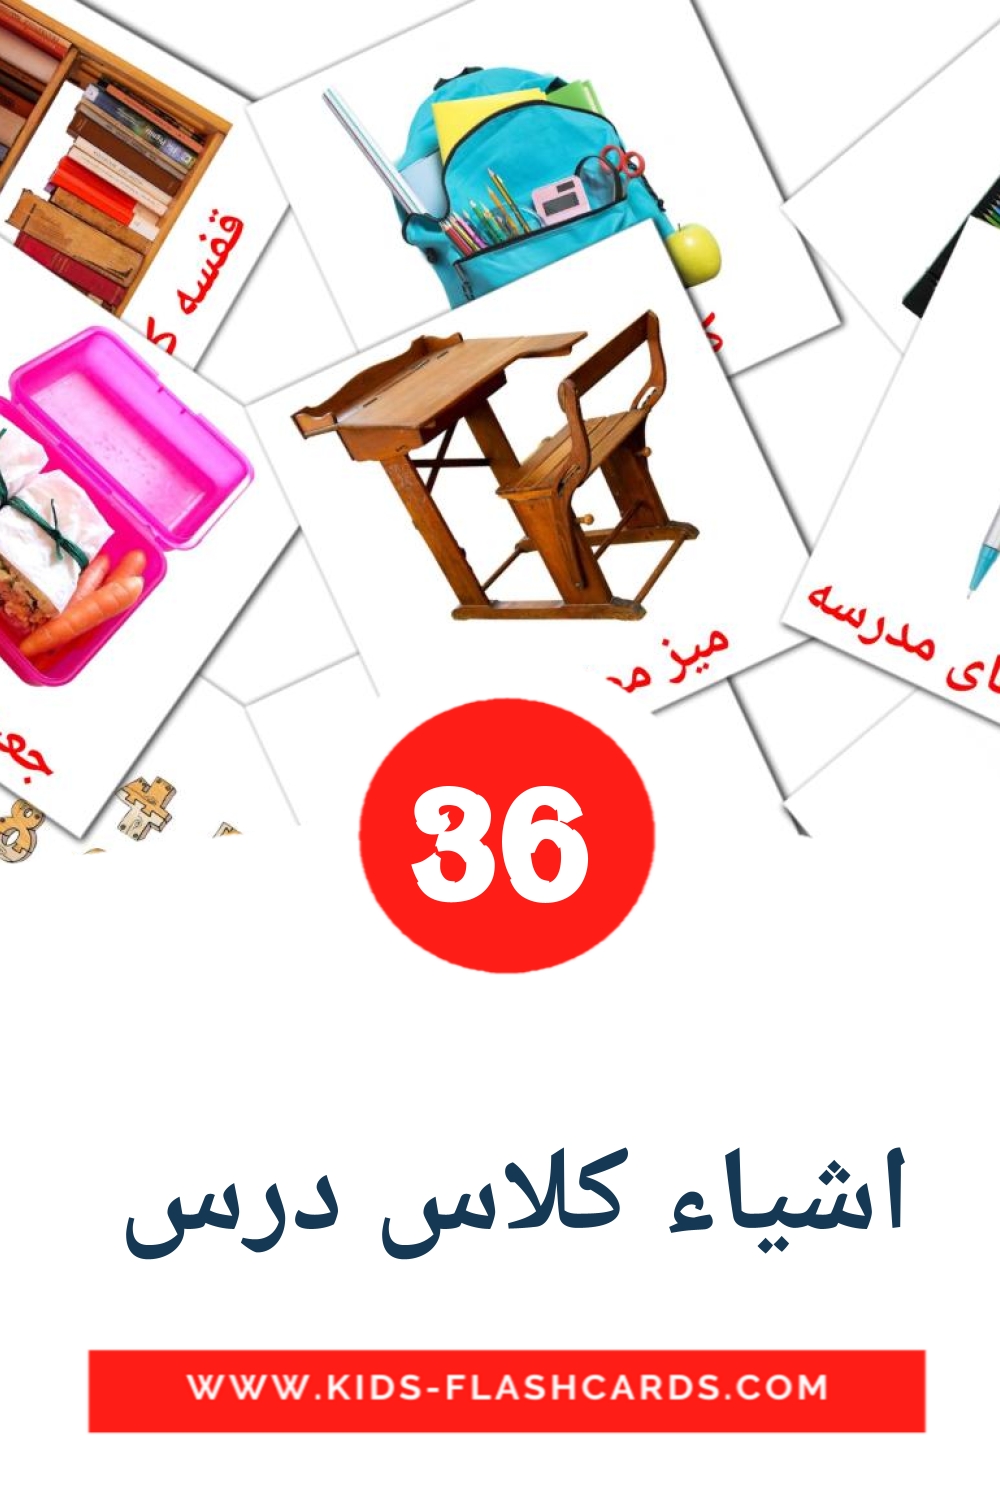 36 Cartões com Imagens de اشیاء کلاس درس  para Jardim de Infância em persa